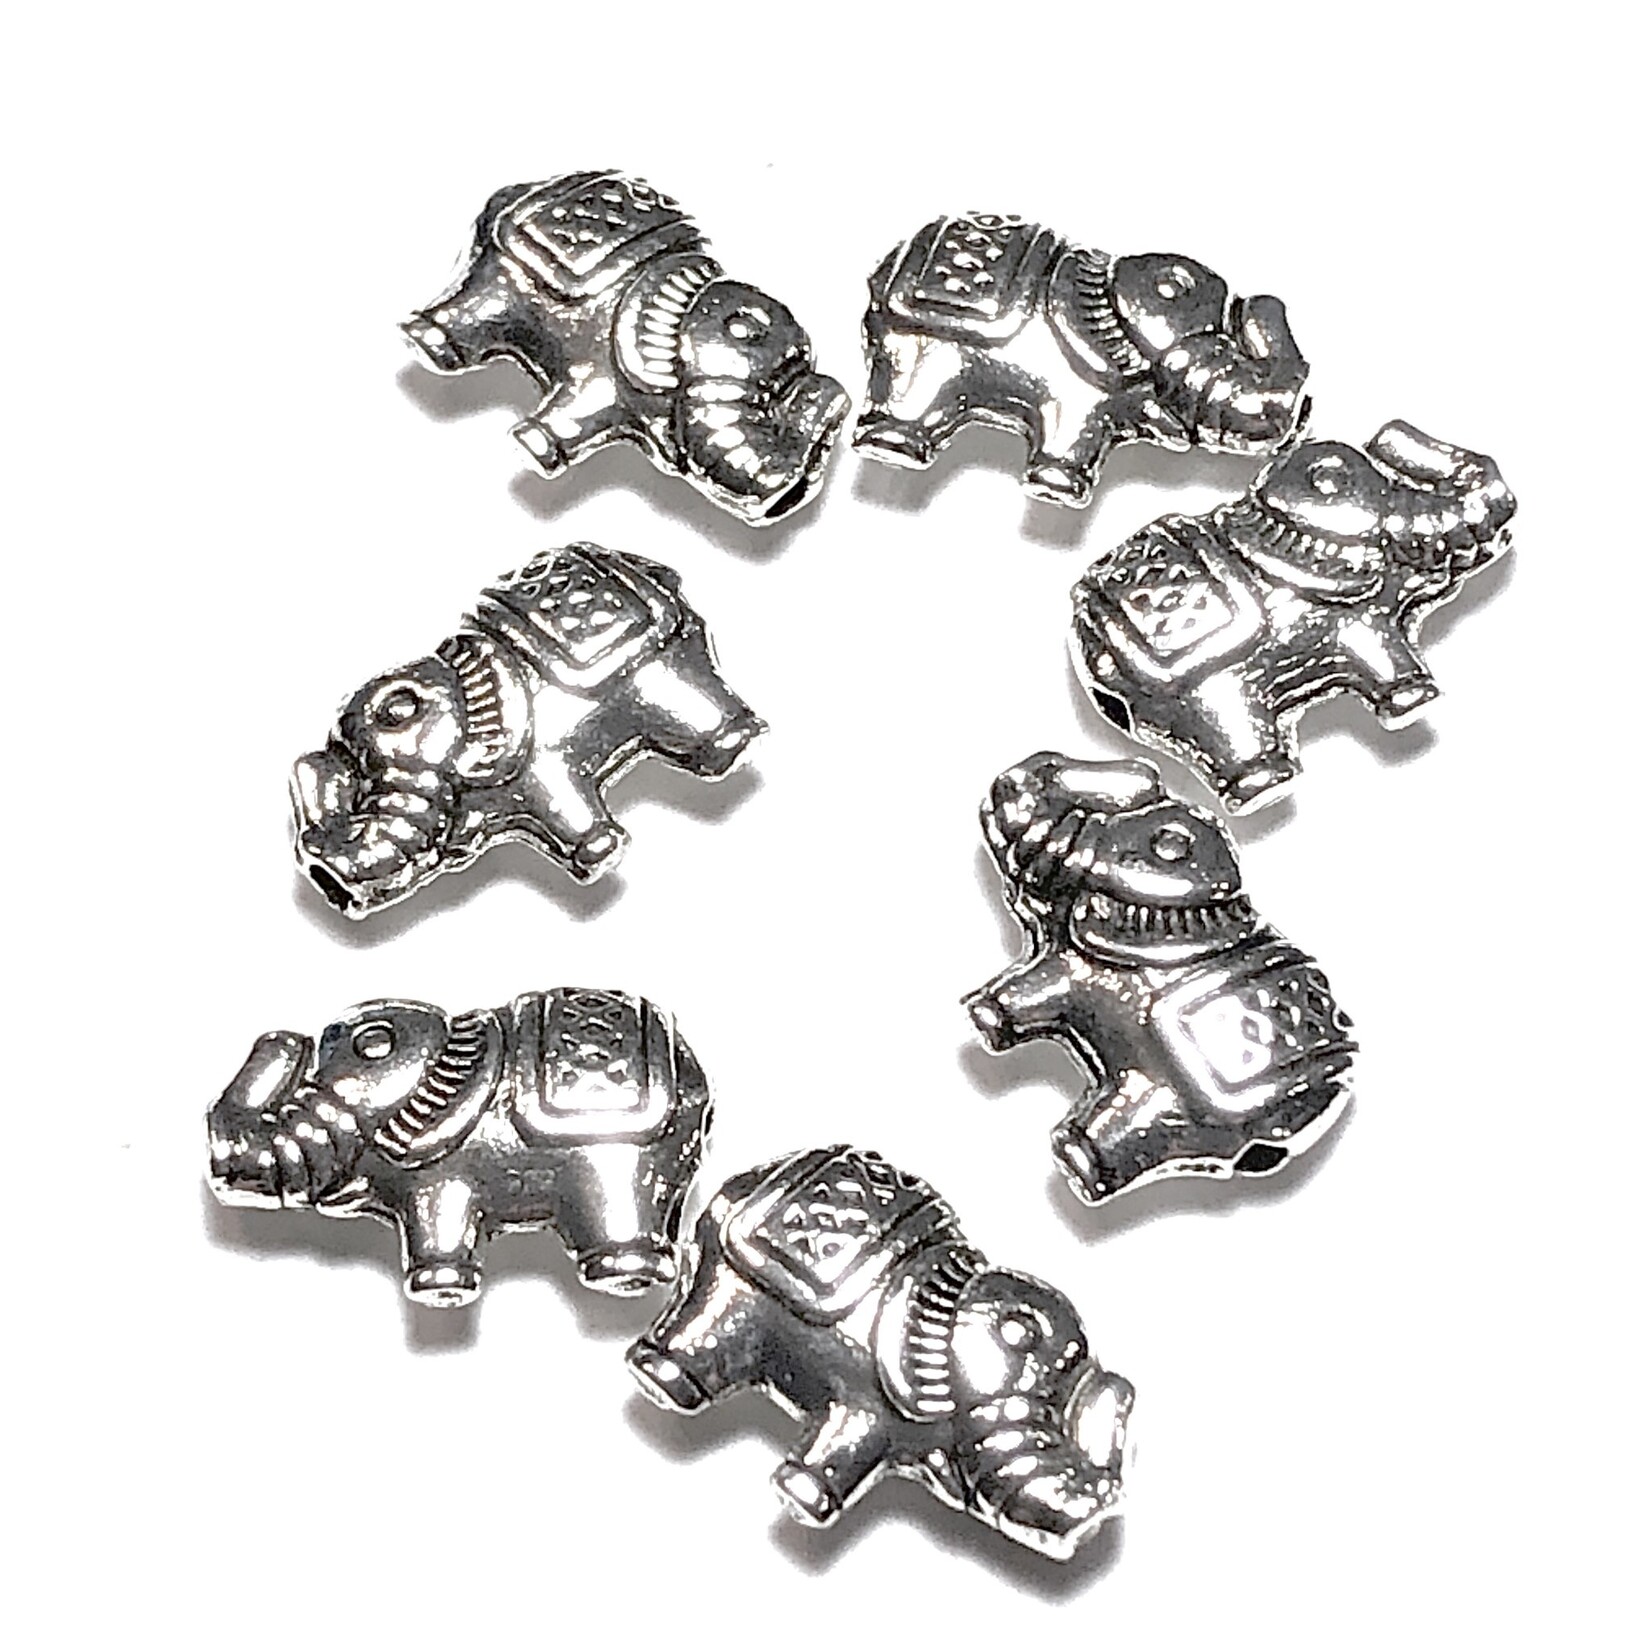 Tibetan Silver Alloy 8.5mm Elephant Bead 20pcs